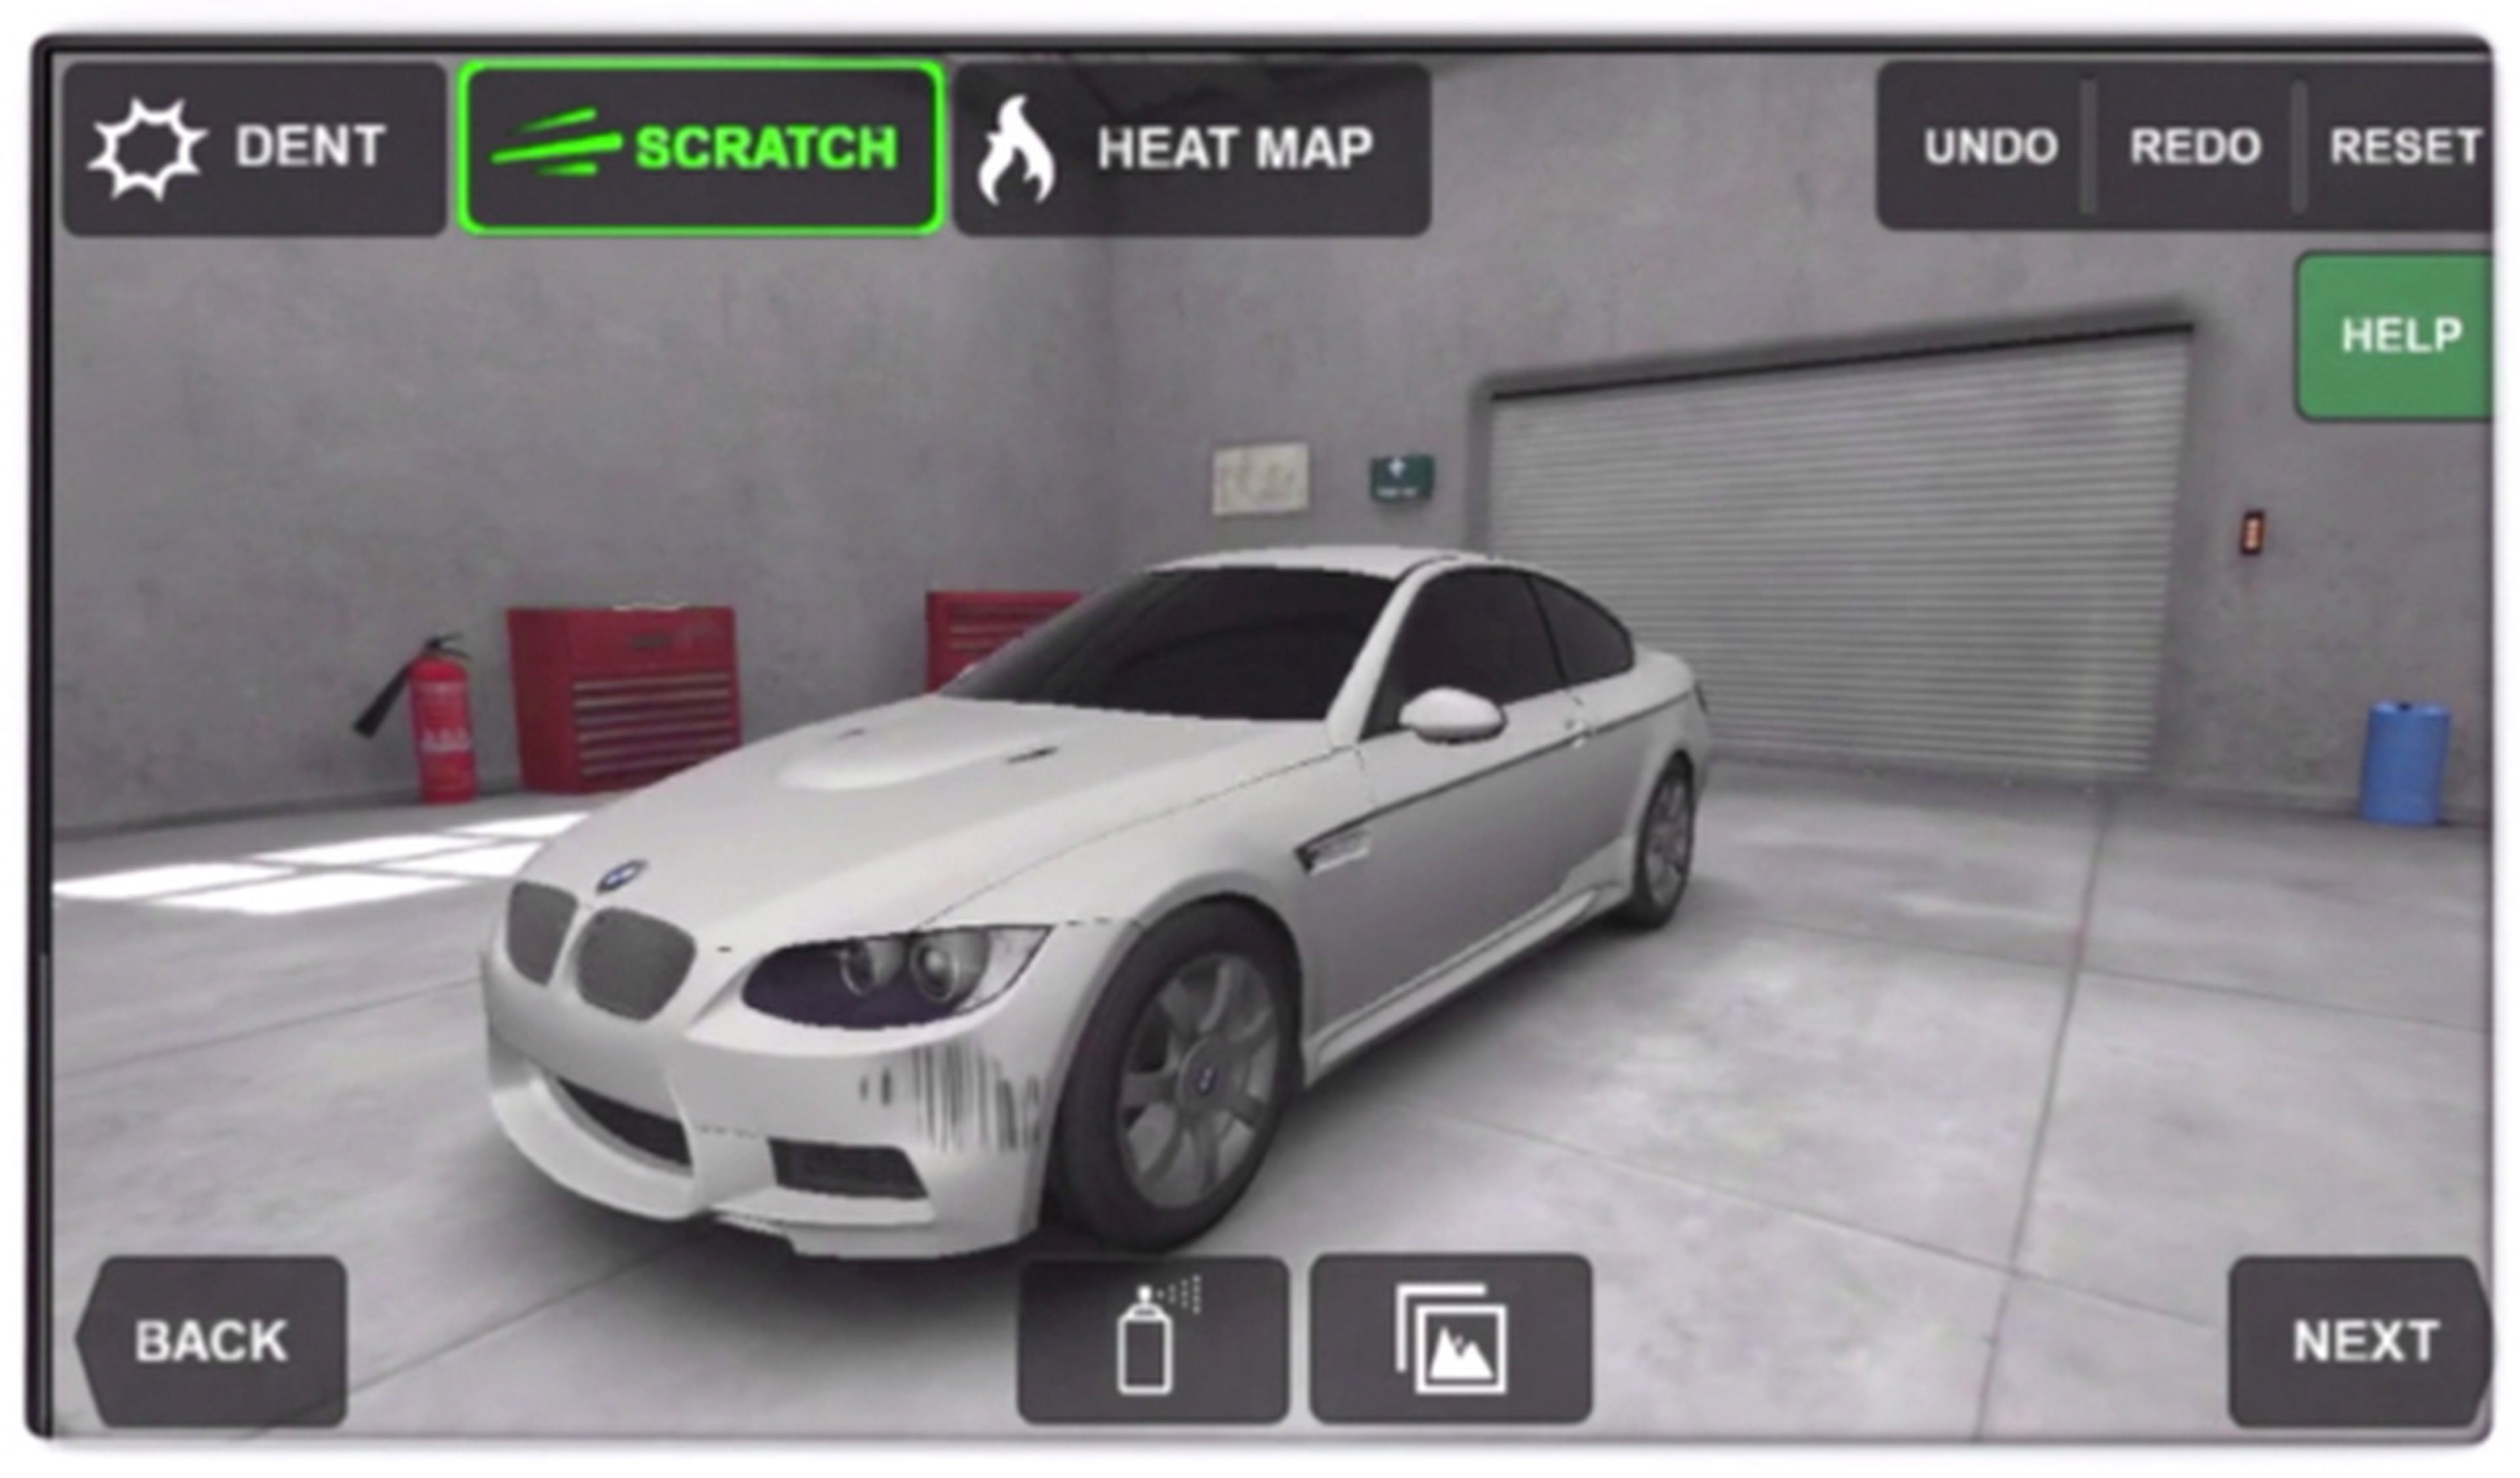 La app que te permite controlar la reparación de tu coche